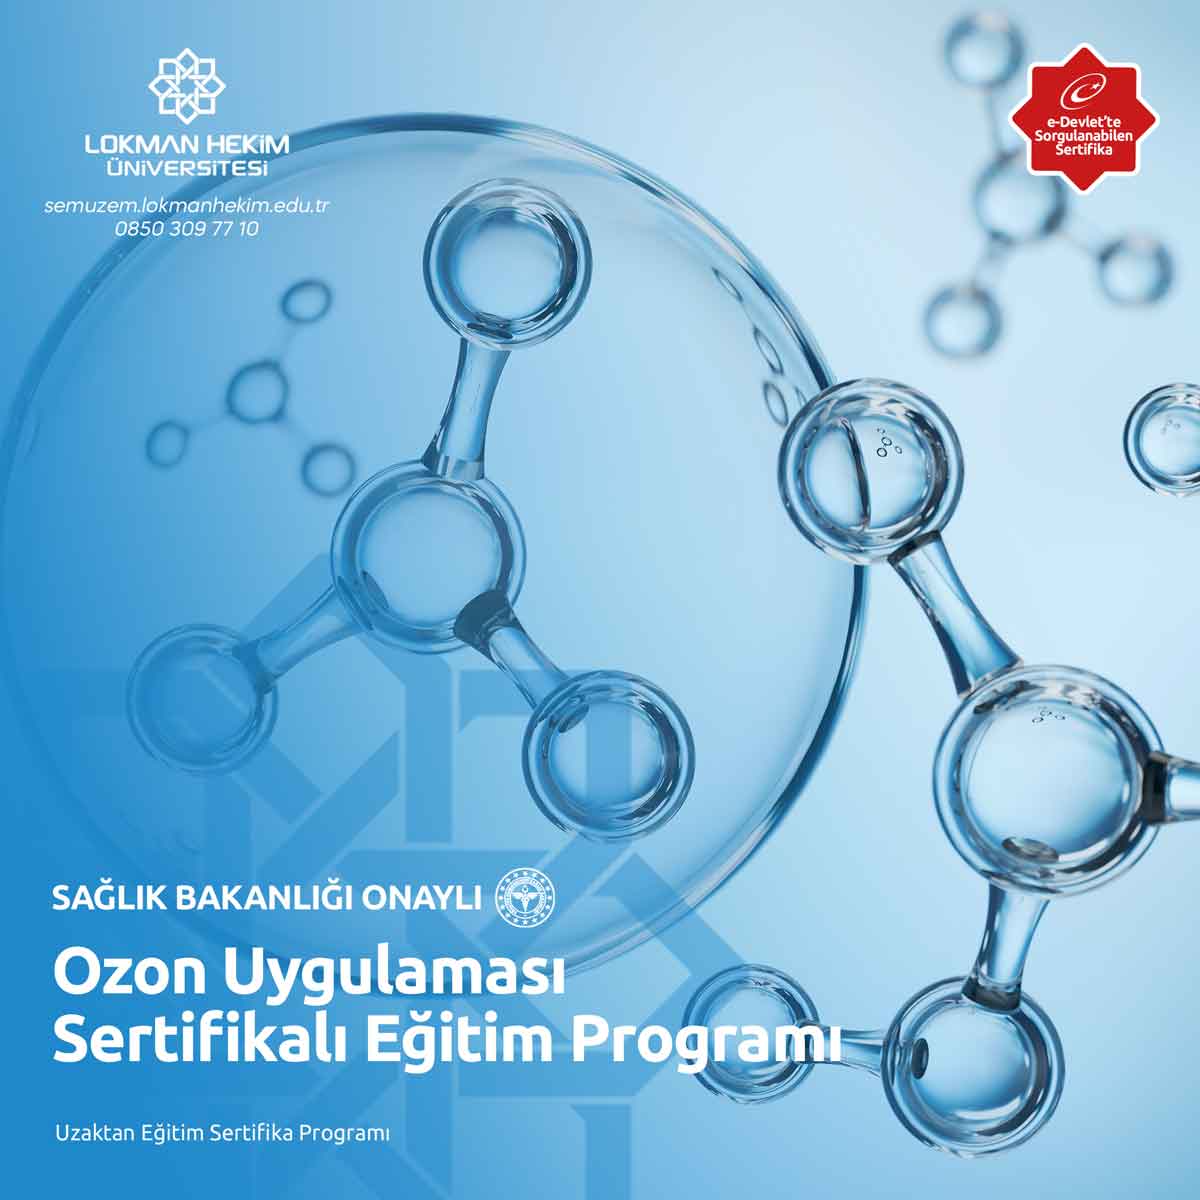 Ozon Uygulaması Sertifikalı Eğitim Programı